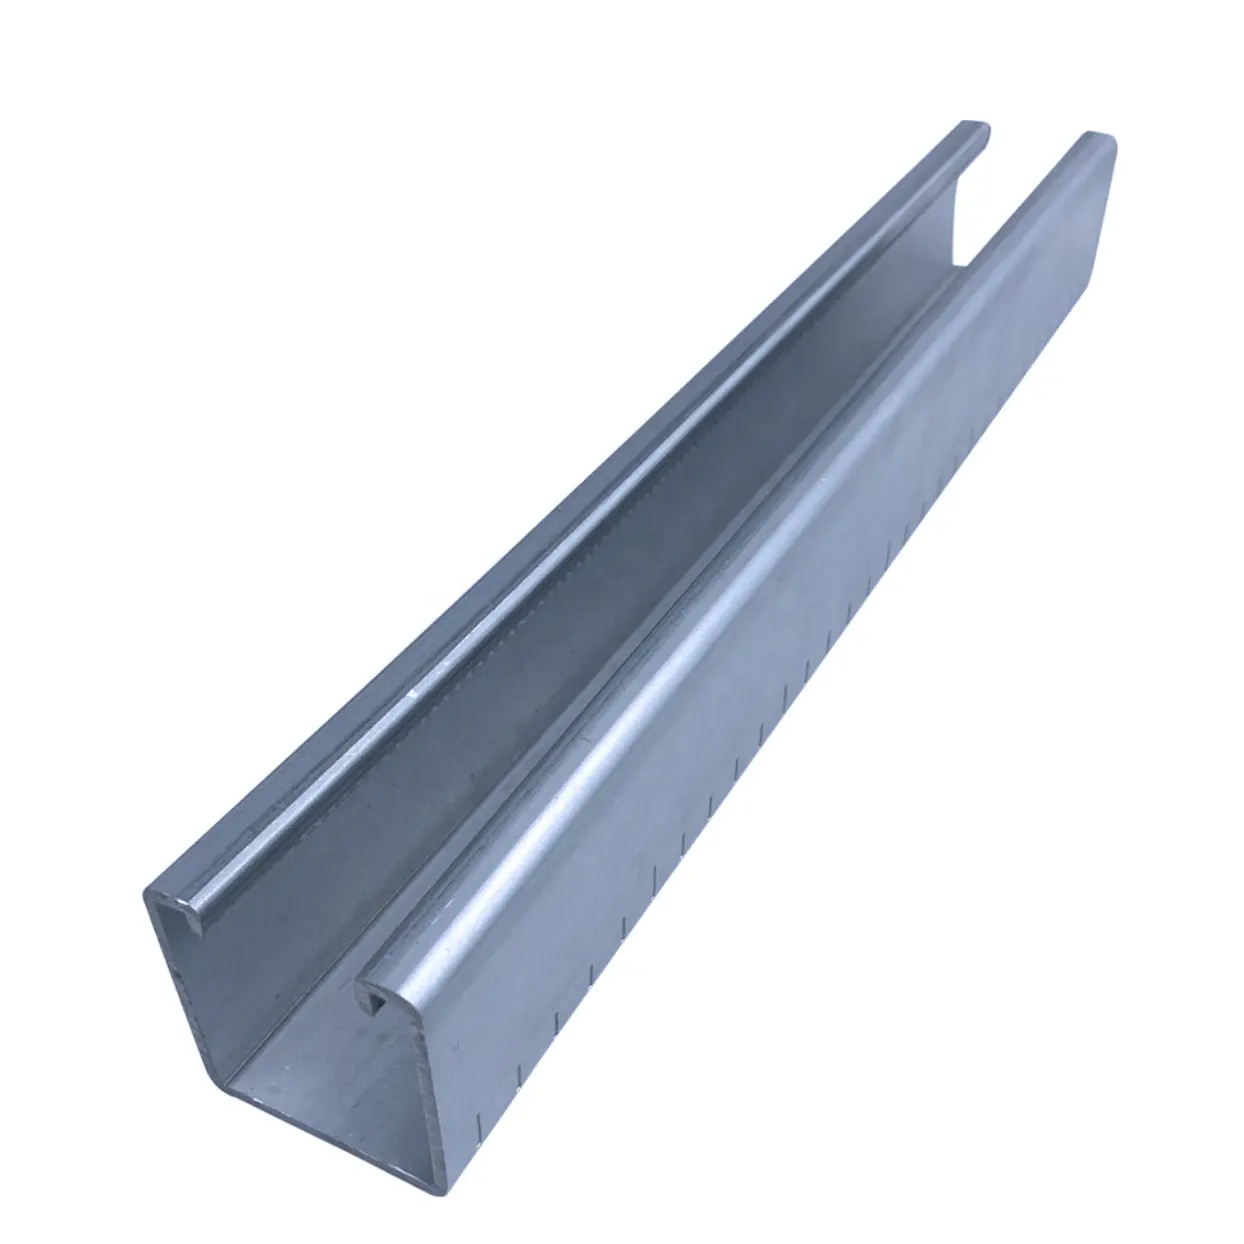 Peso de canal de acero, estructura de acero, en u, galvanizado